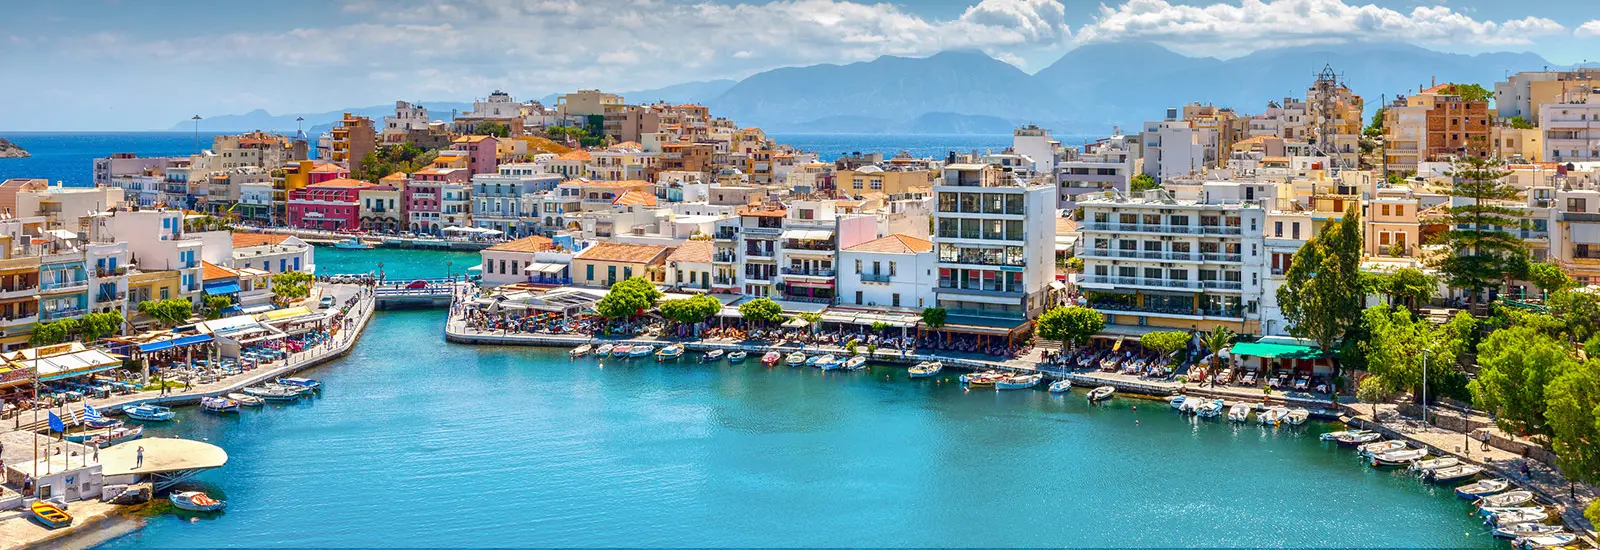 Rethymno auf Kreta - Bunte Häuser an der Küste